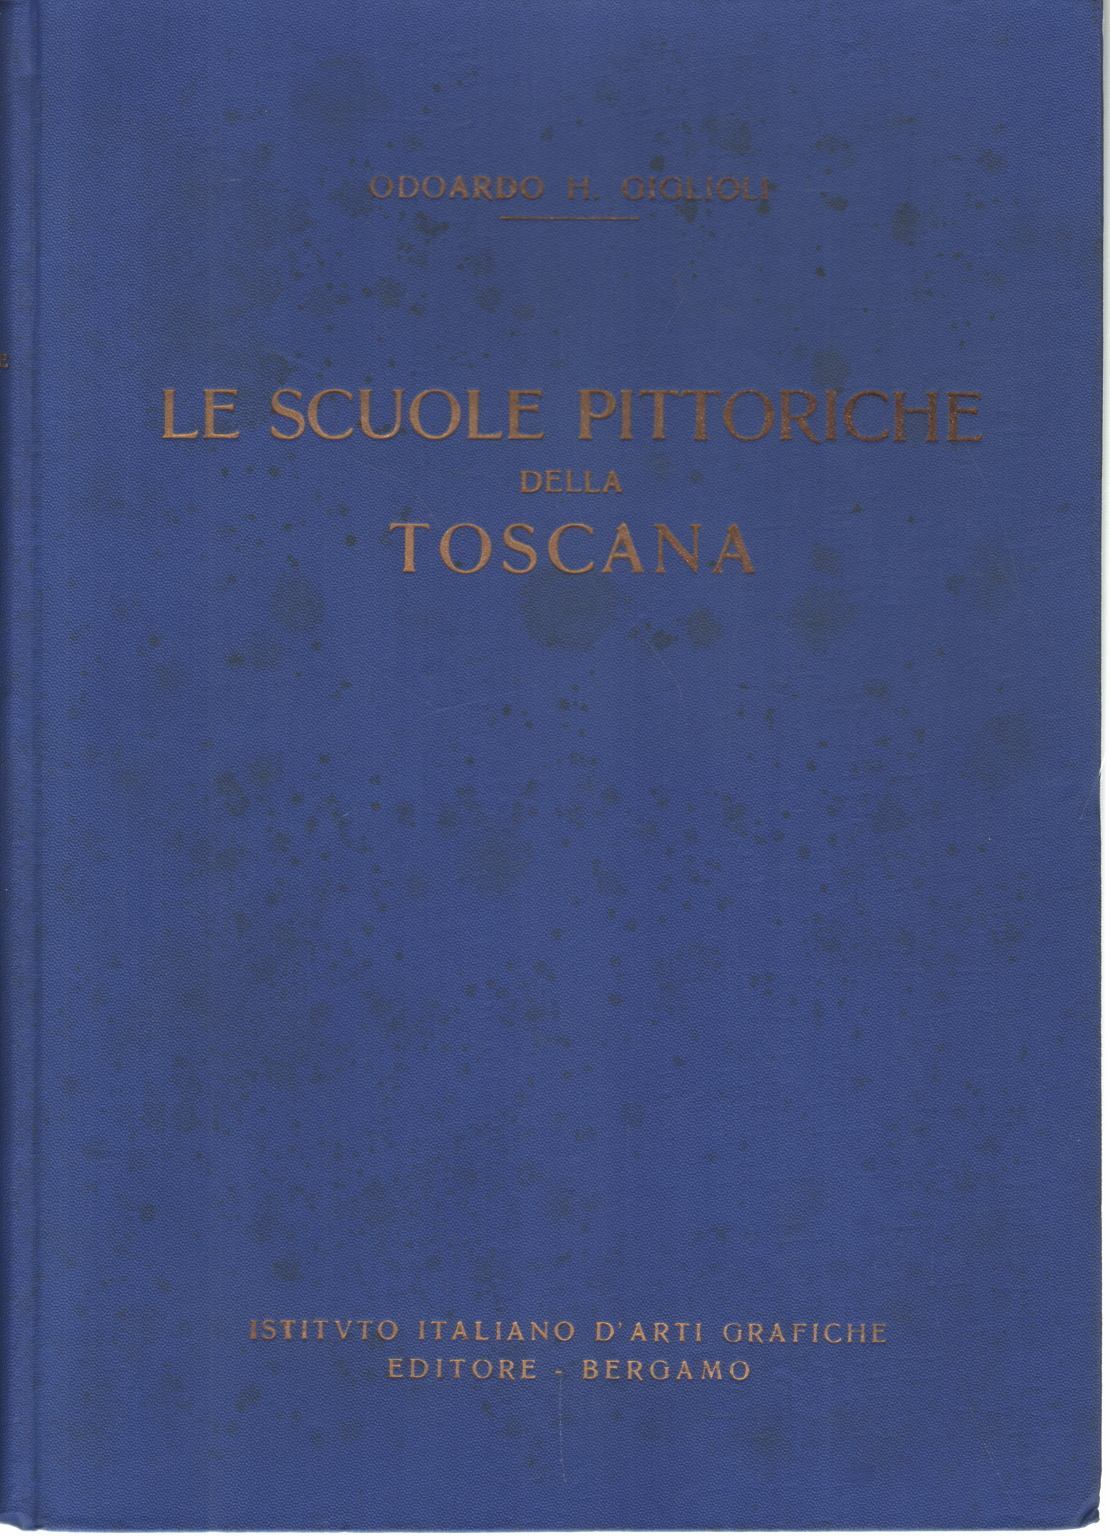 Die schulen der malerei in der Toskana (Sec. XIV - XV), Edward H. Giglioli